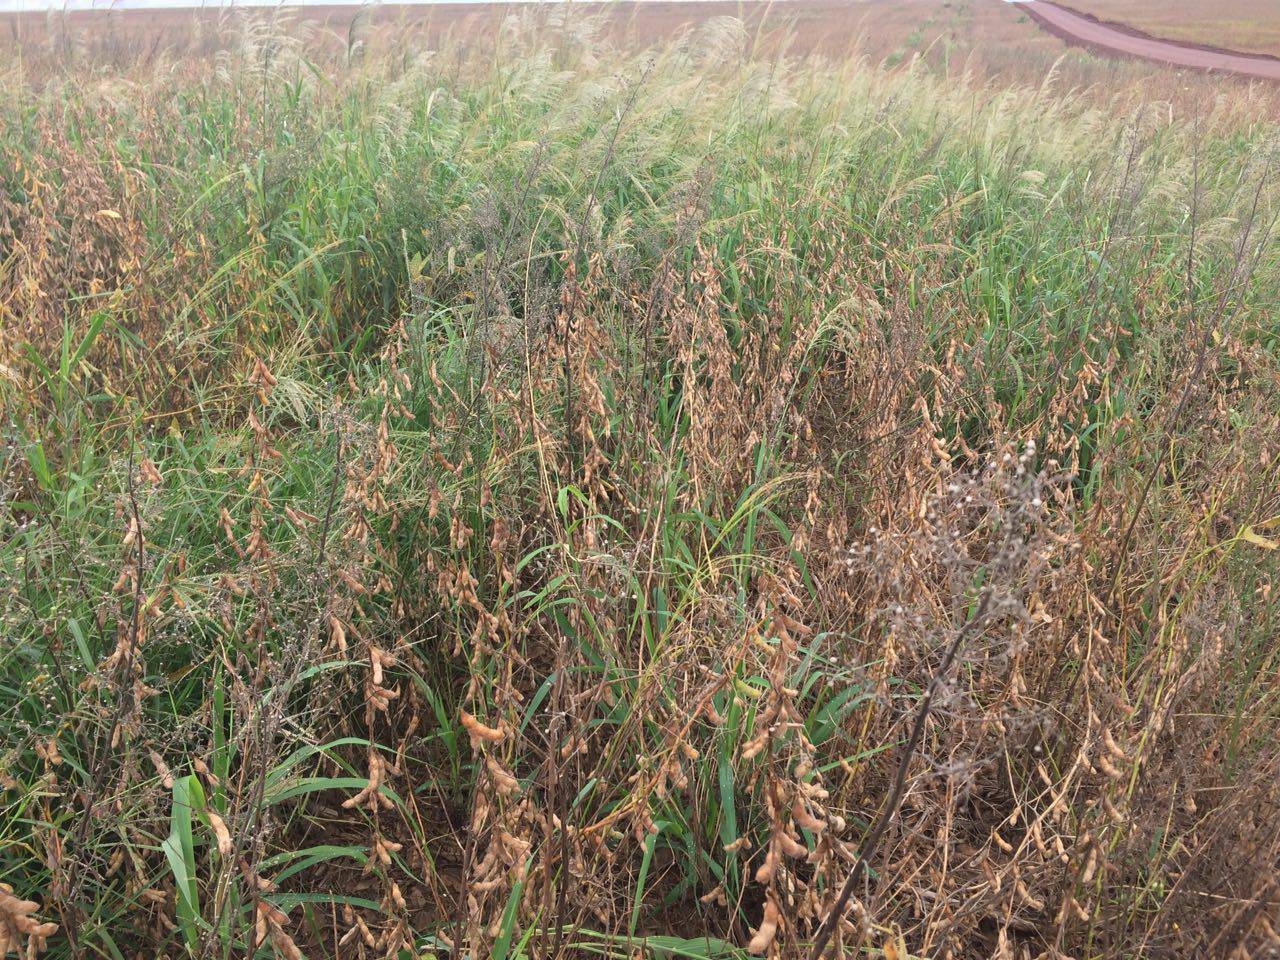 Área de produção de soja safra 2017/2018 na região do oeste do Paraná sob alta infestação de plantas daninhas no momento da colheita da soja